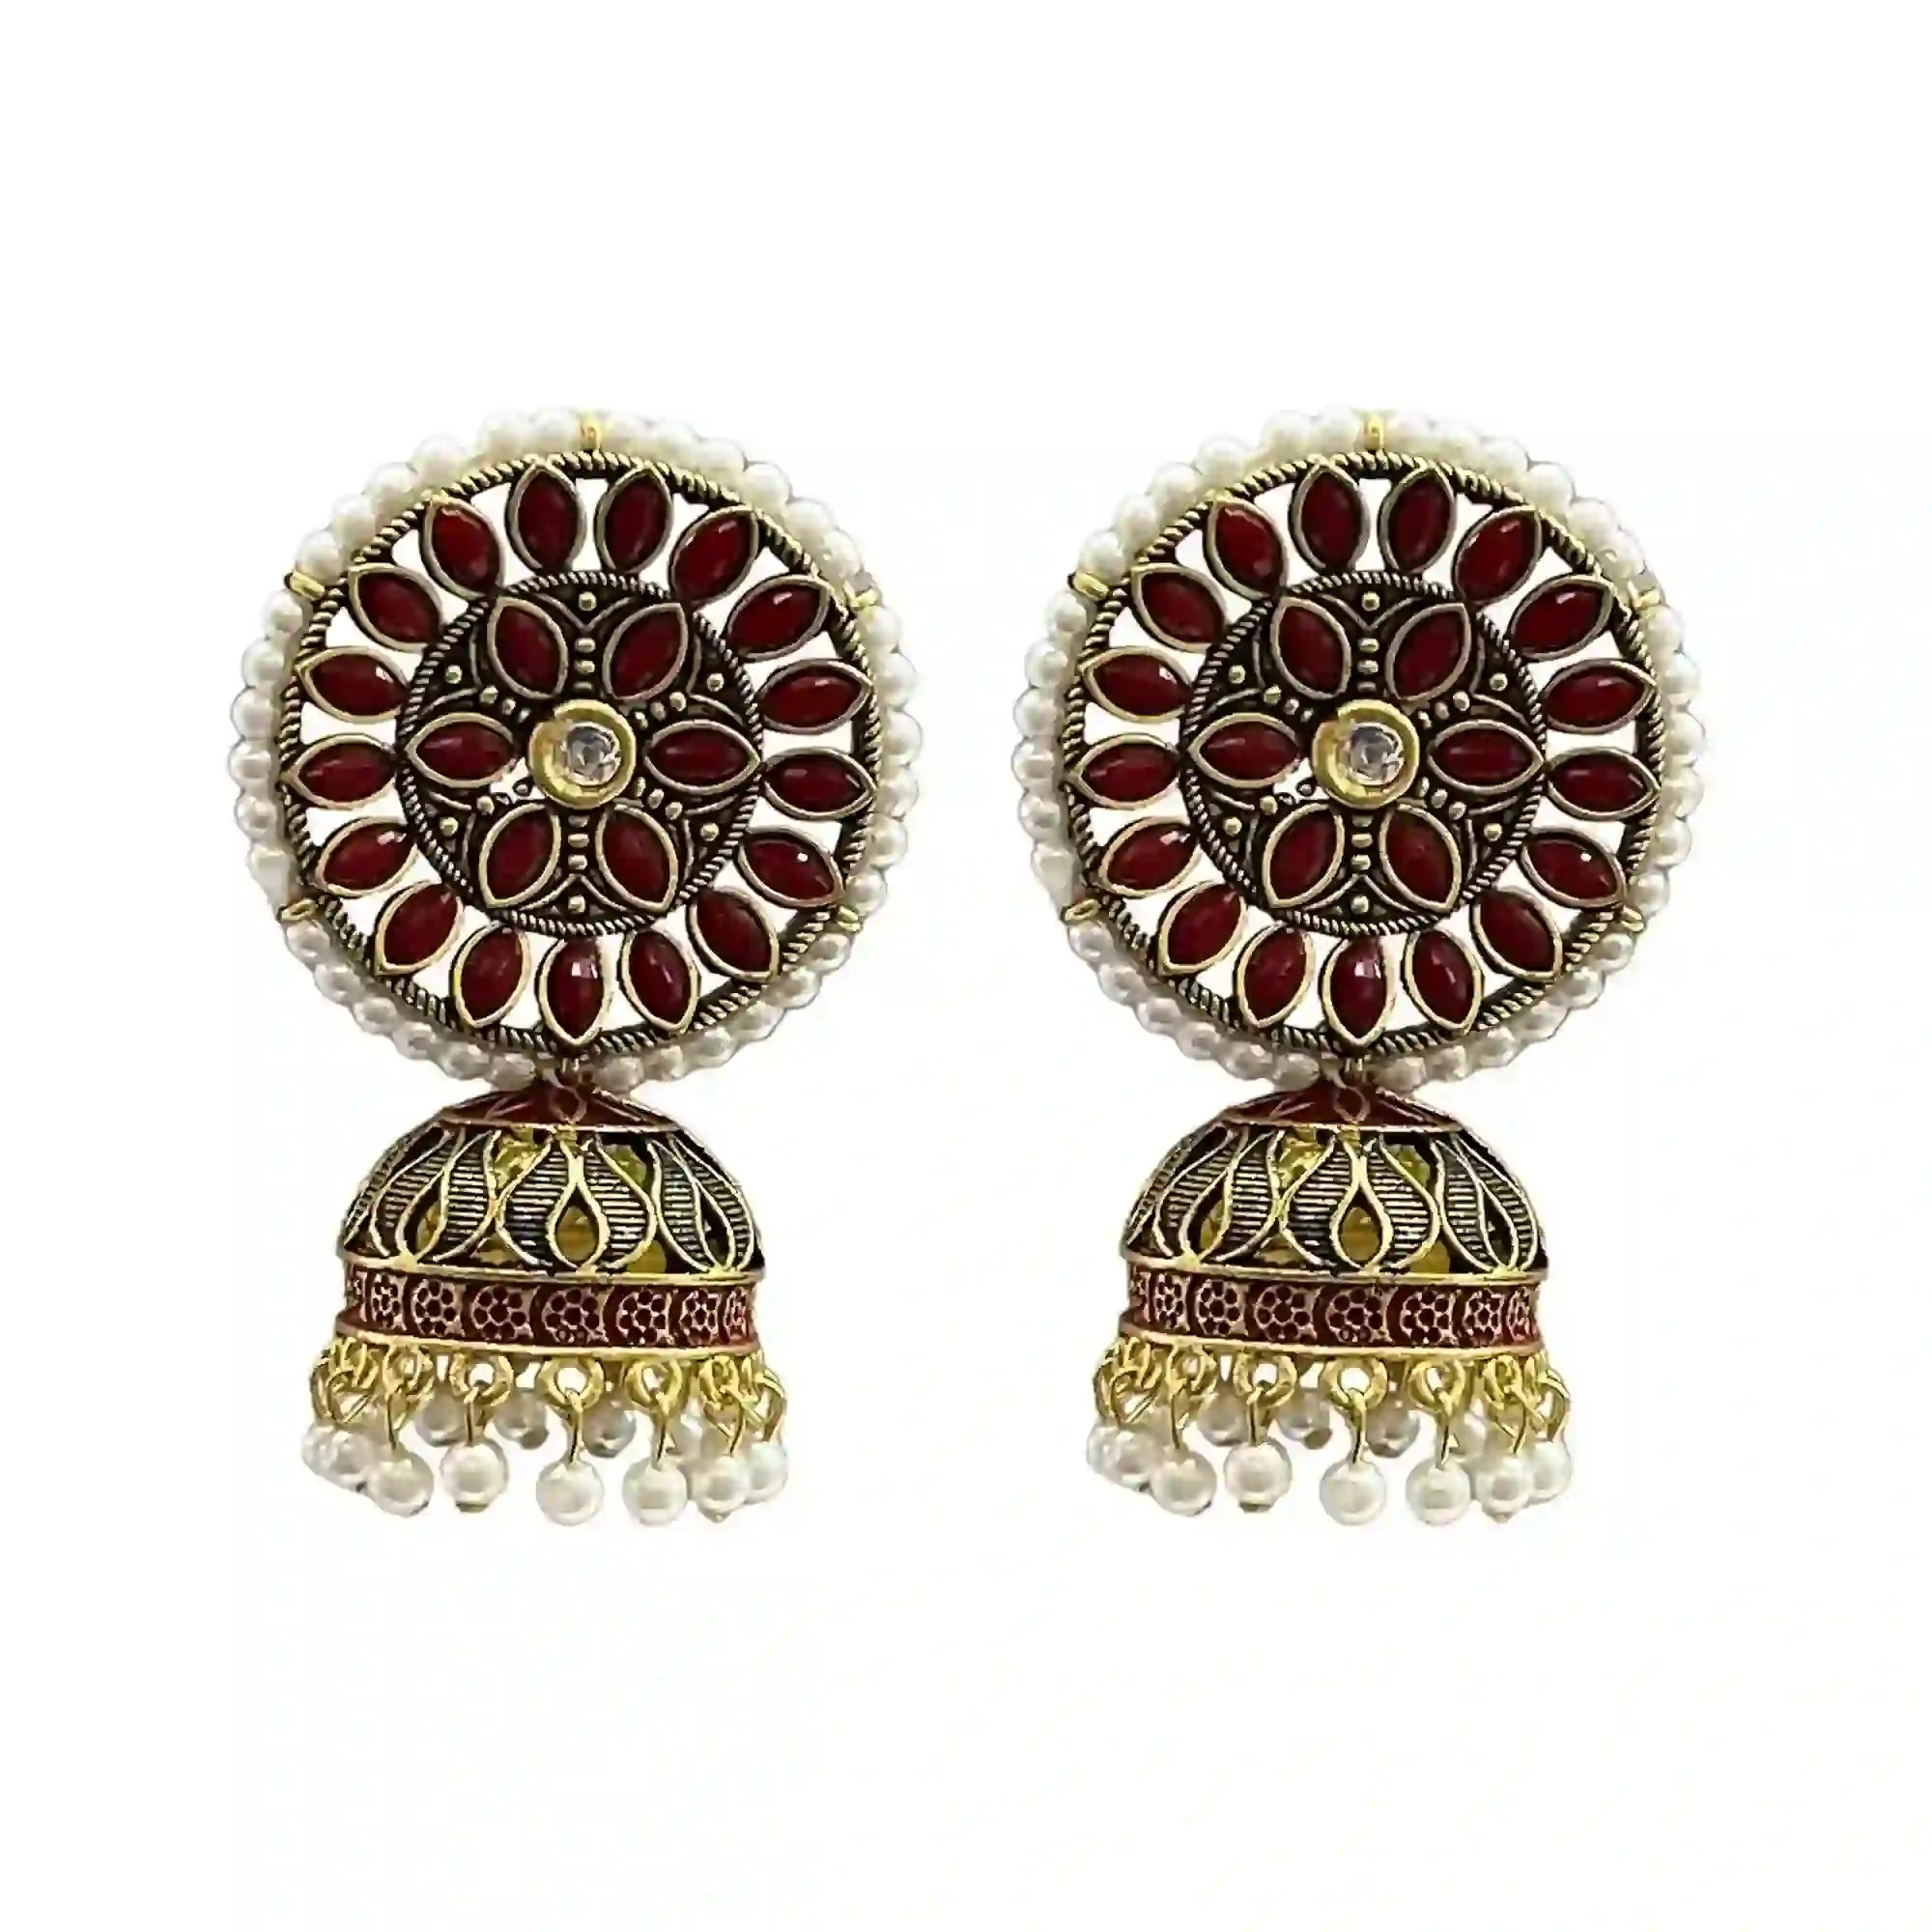 Kudan stone jhumka earrings, navrati best earrings, wedding jhumka earrings, oxidised earring